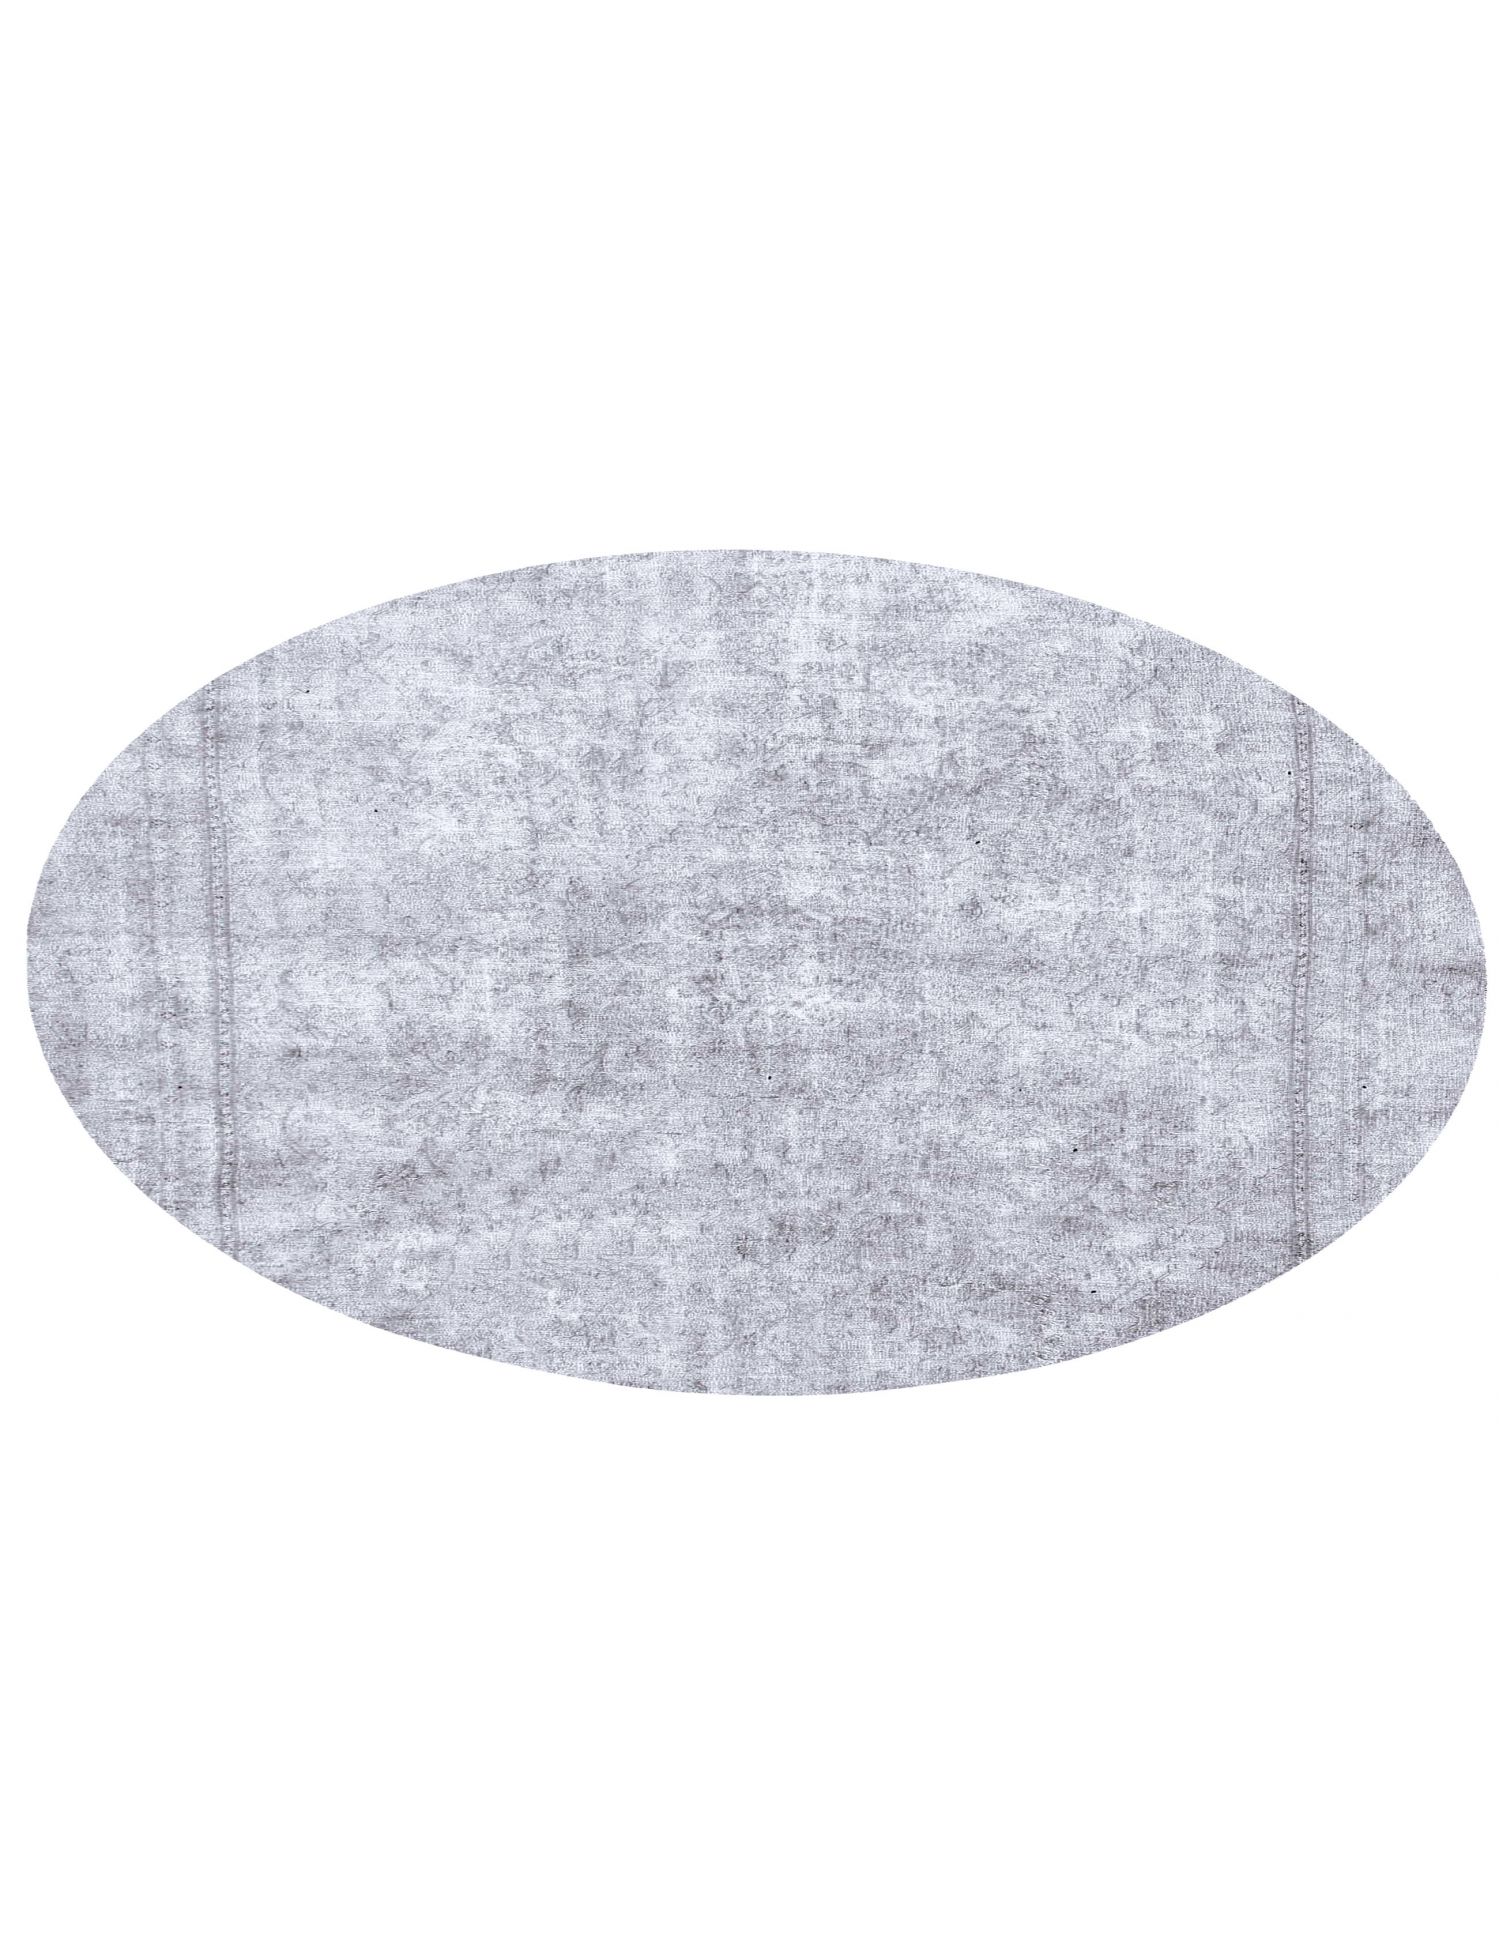 Rund  Vintage Teppich  grau <br/>225 x 225 cm